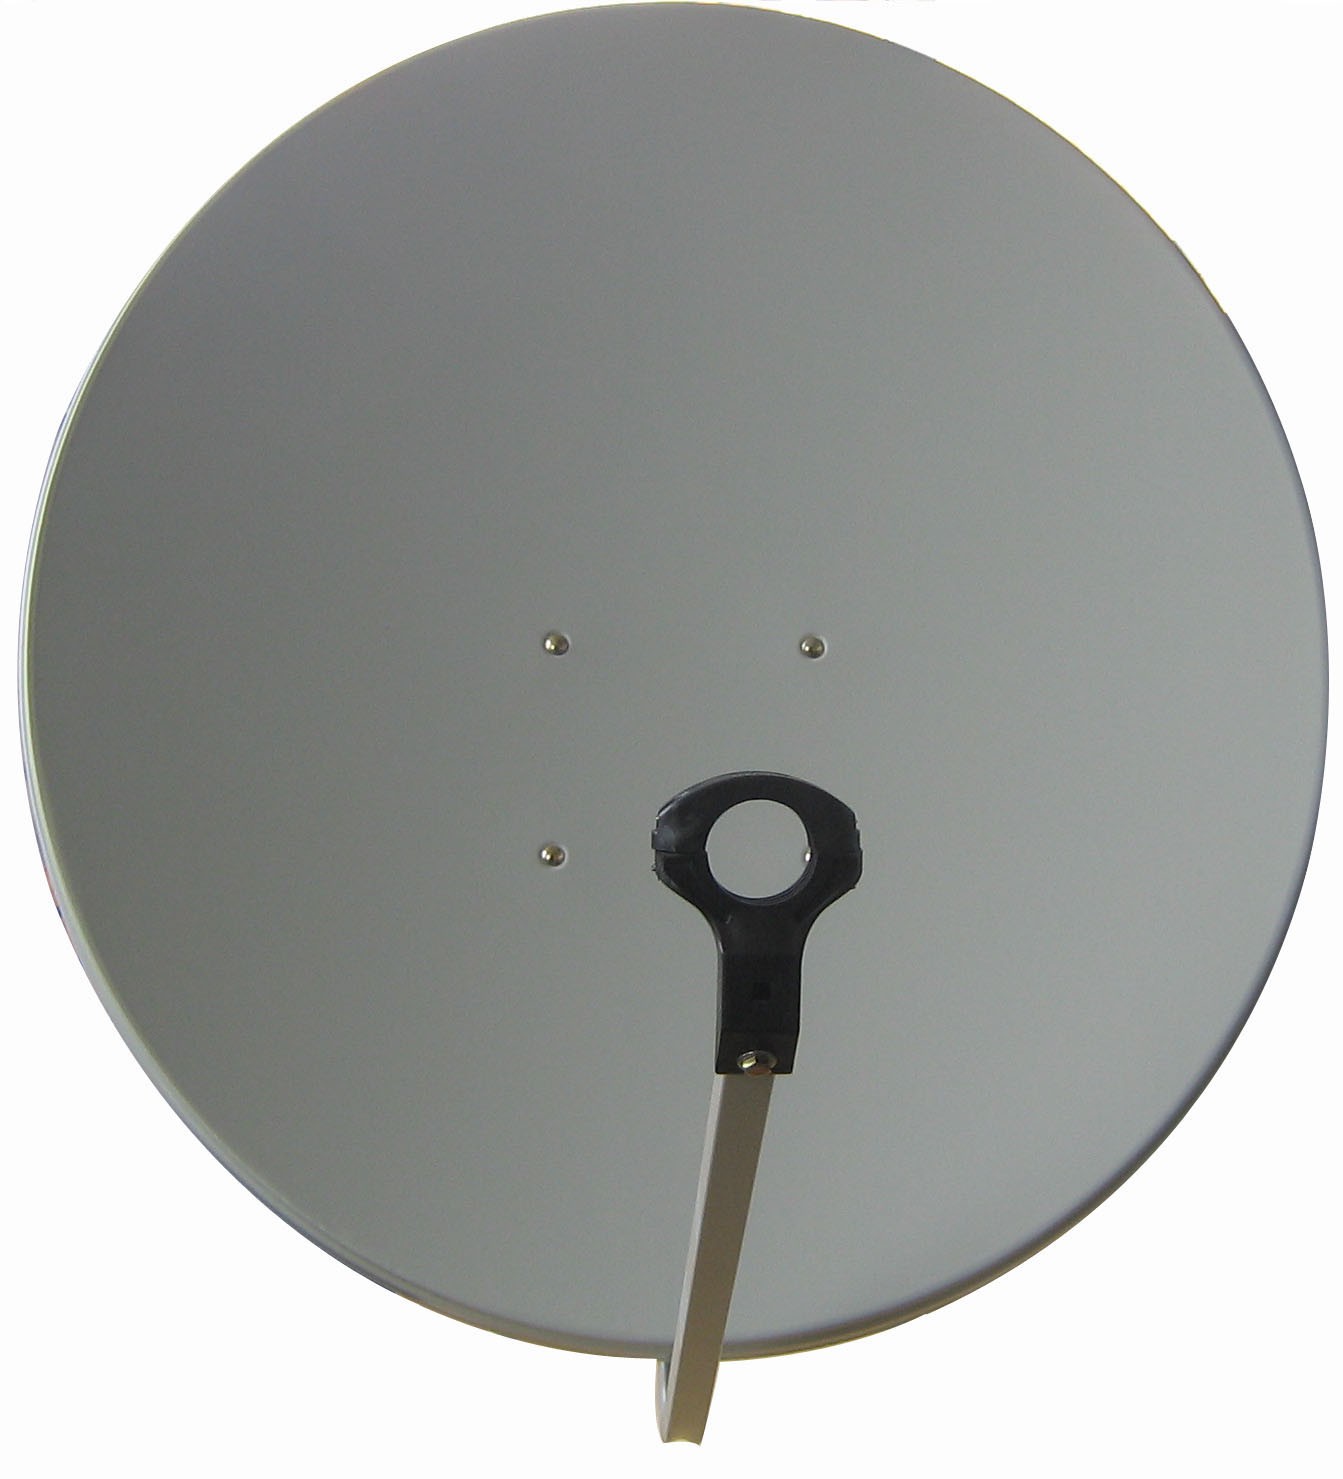 Antenne parabolique en bande Ku de 80 cm